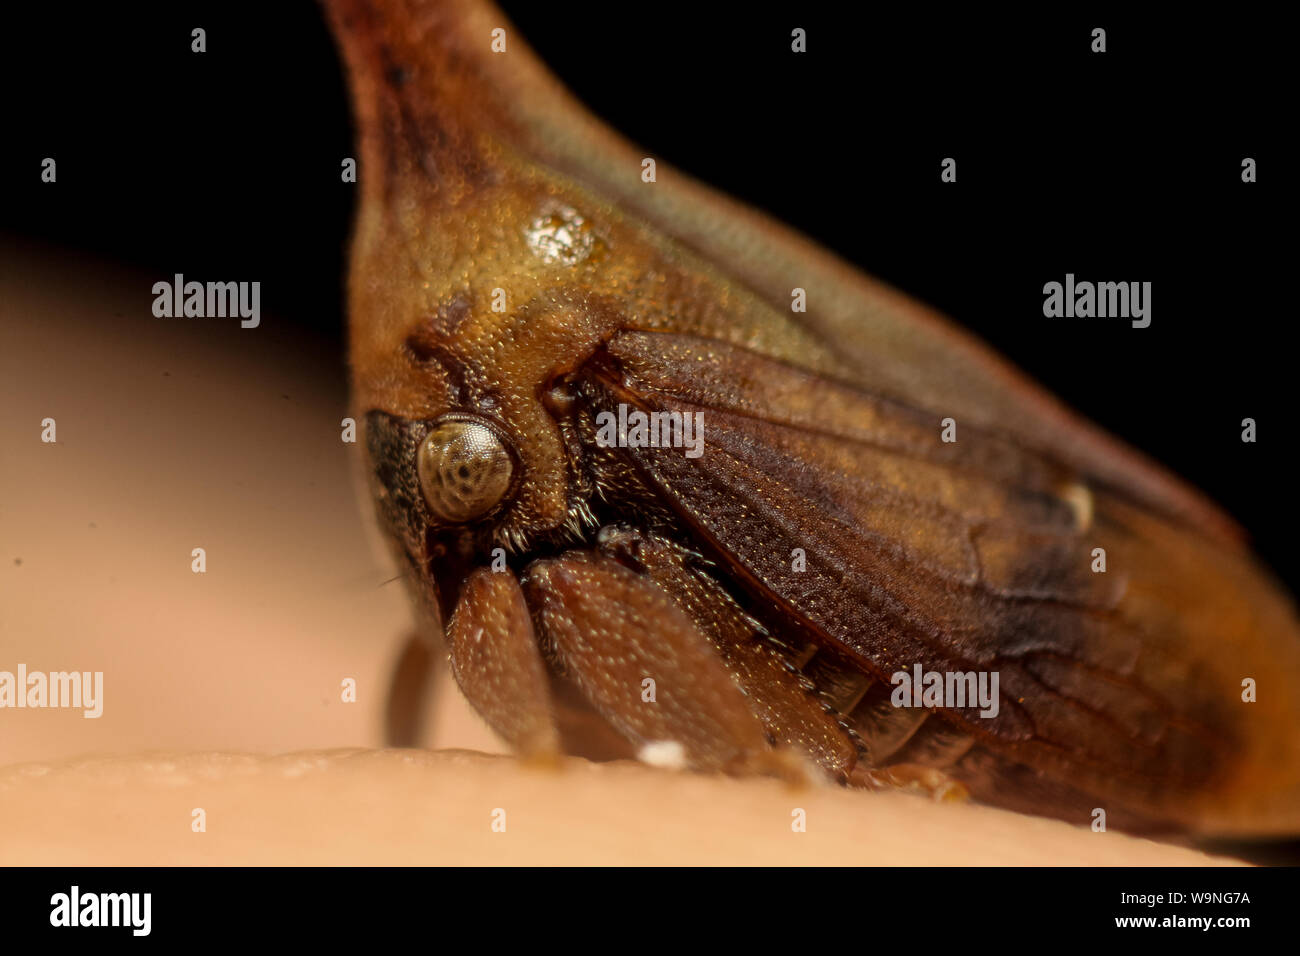 Treehopper (Membracidae) insecte sur un doigt humain, trouvés dans un jardin tropical au Brésil Banque D'Images